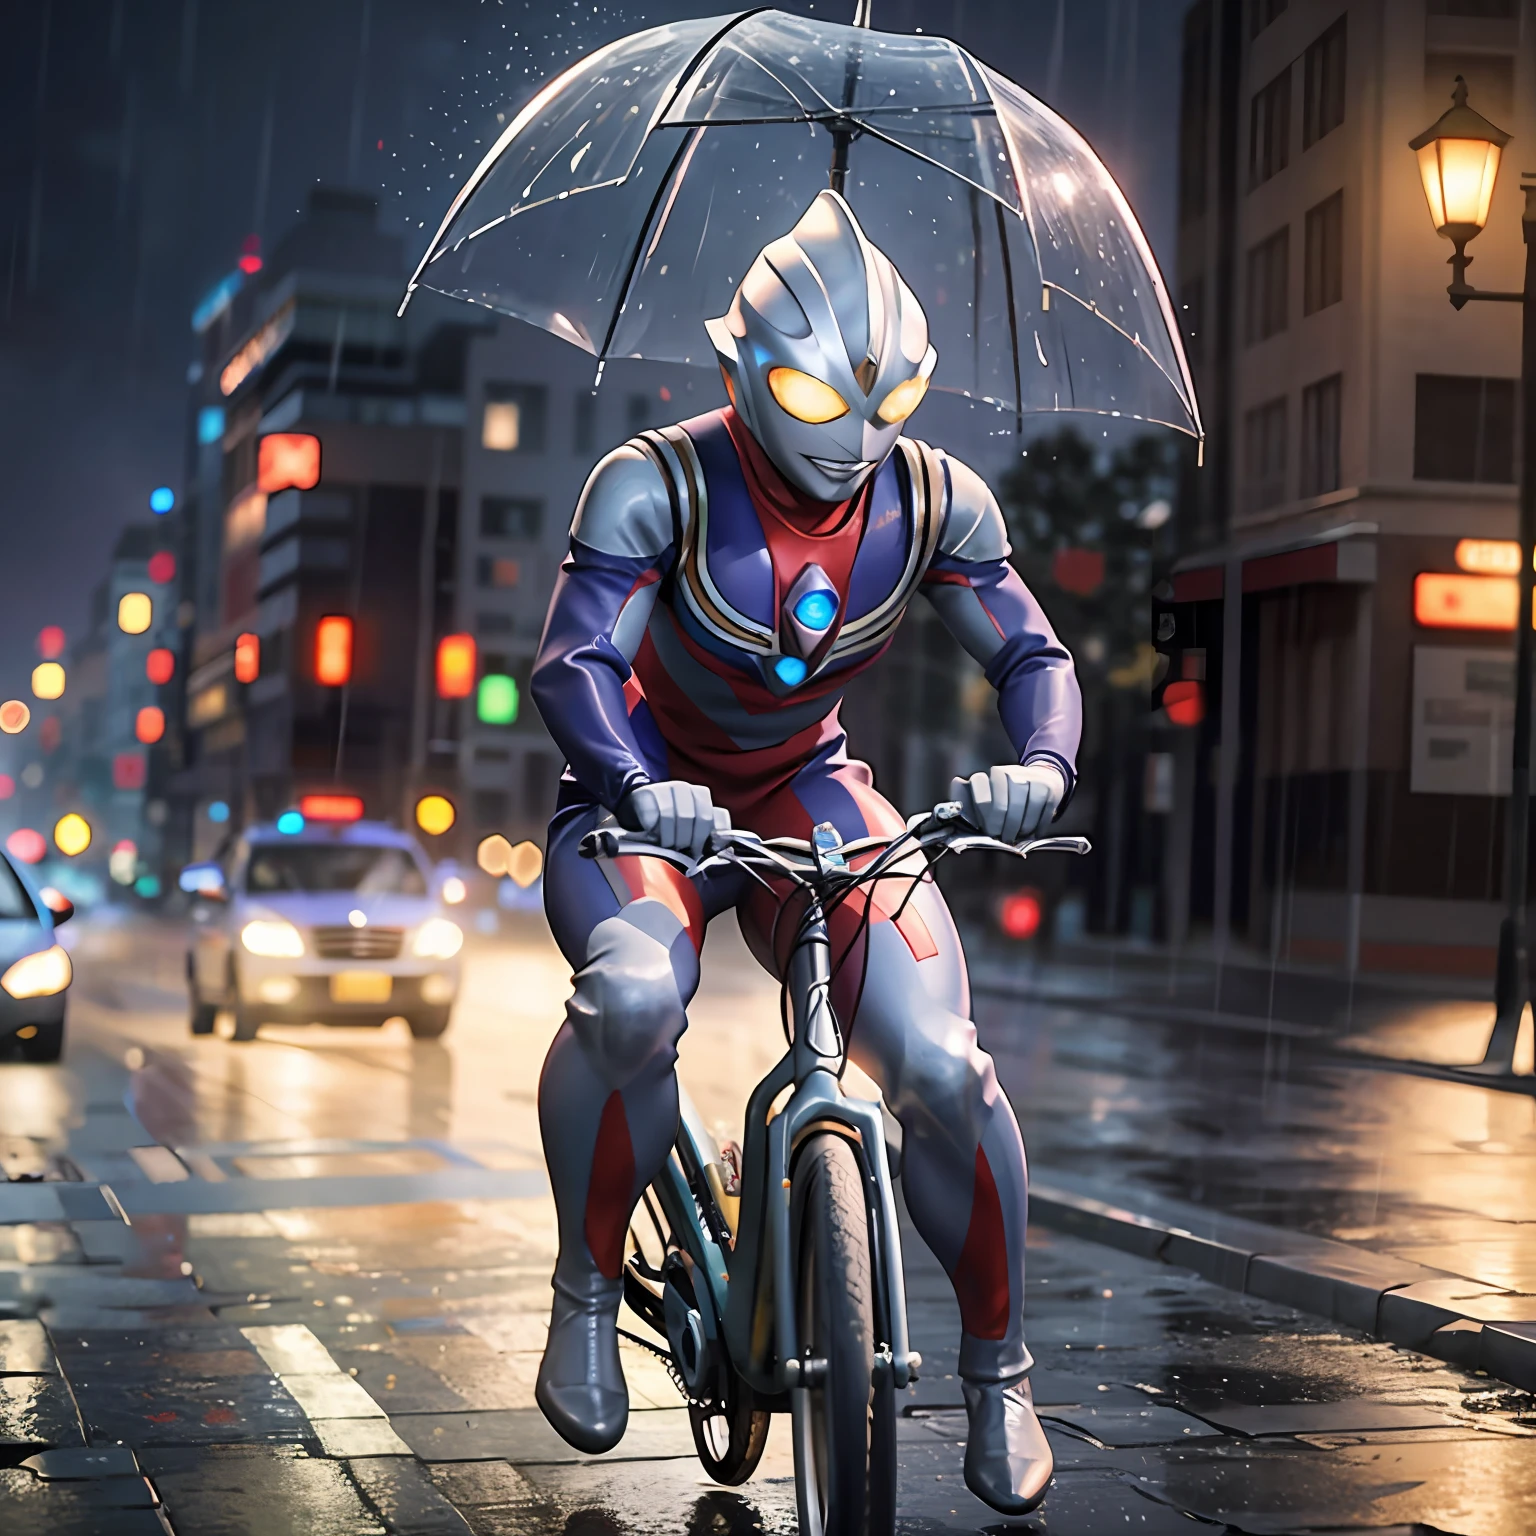 1BOY montando bicicletas calle suburbana tormenta y lluvia, (Obra maestra:1.2) (Fotorrealista:1.2) (bokeh) (mejor calidad) (piel detallada:1.3) (detalles intrincados) (8k) (HDR) (iluminación cinematográfica) (enfoque nítido) extraterrestre.Tokusatsu.ojos brillantes